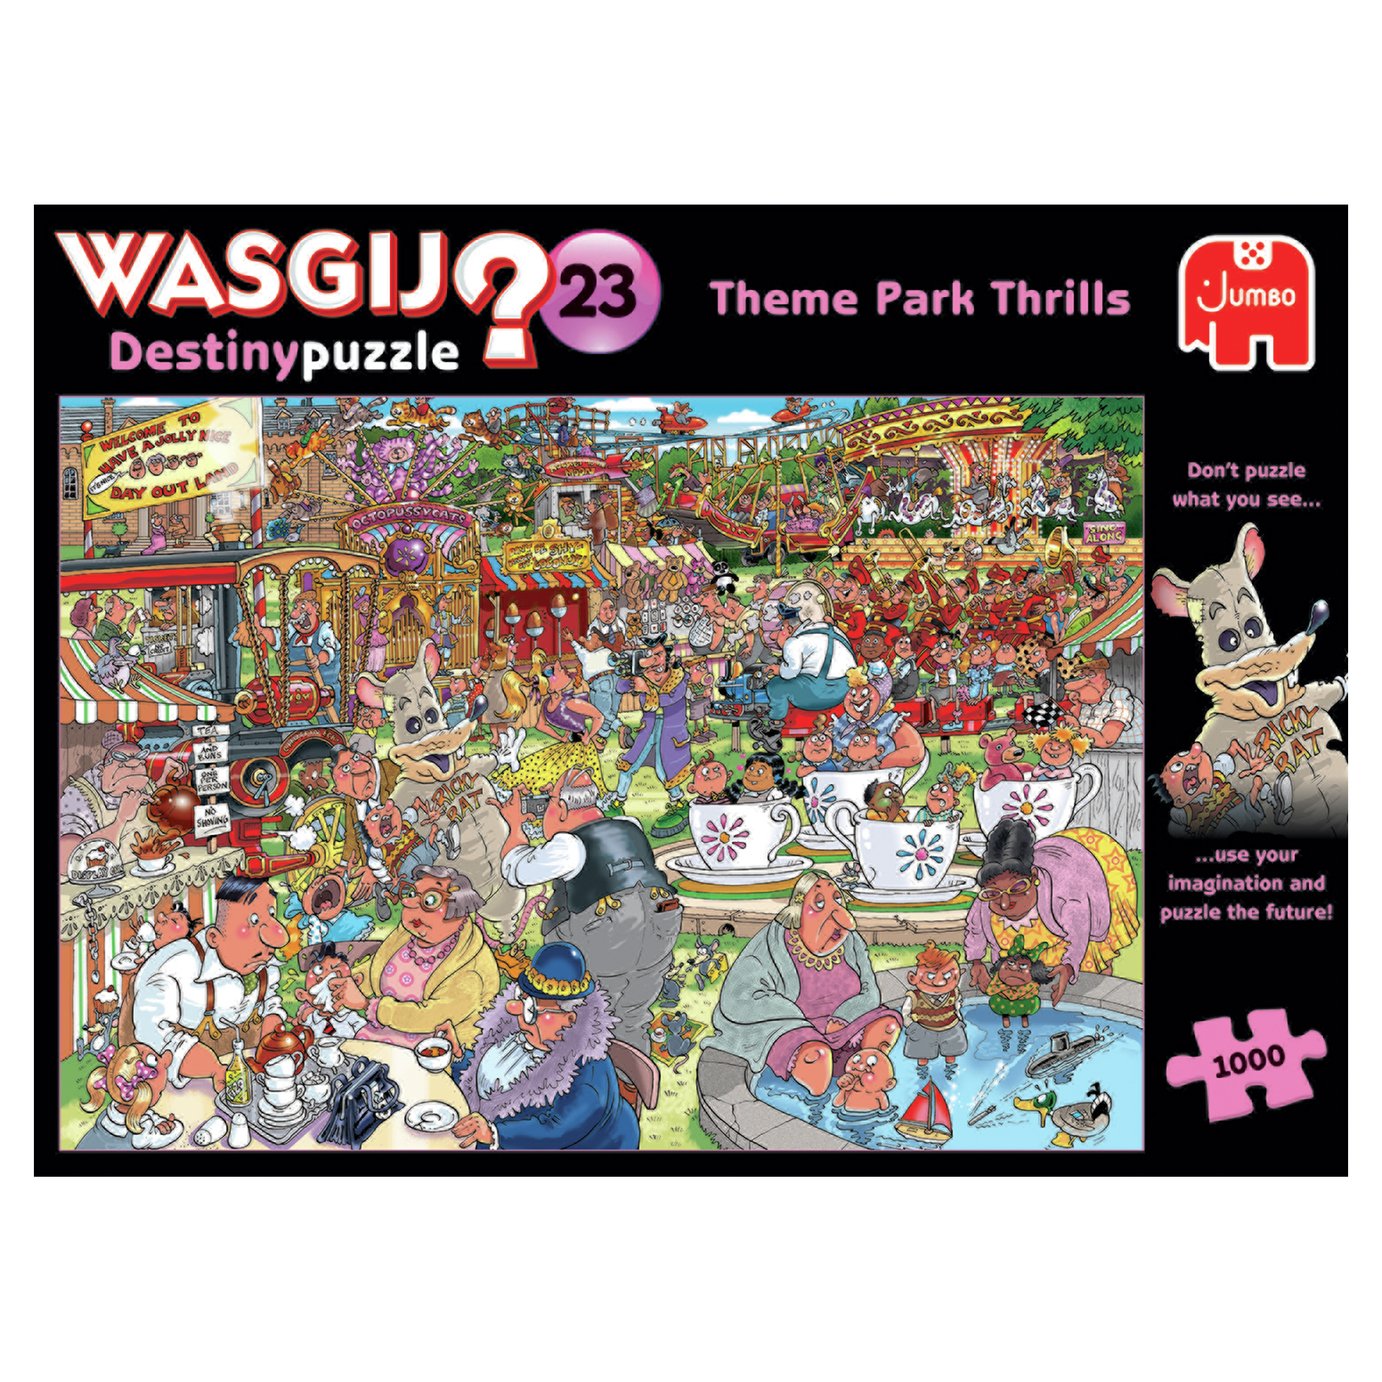 Wasgij Destiny 23 Theme Park Thrills 1000Piece Jigsaw Puzzle